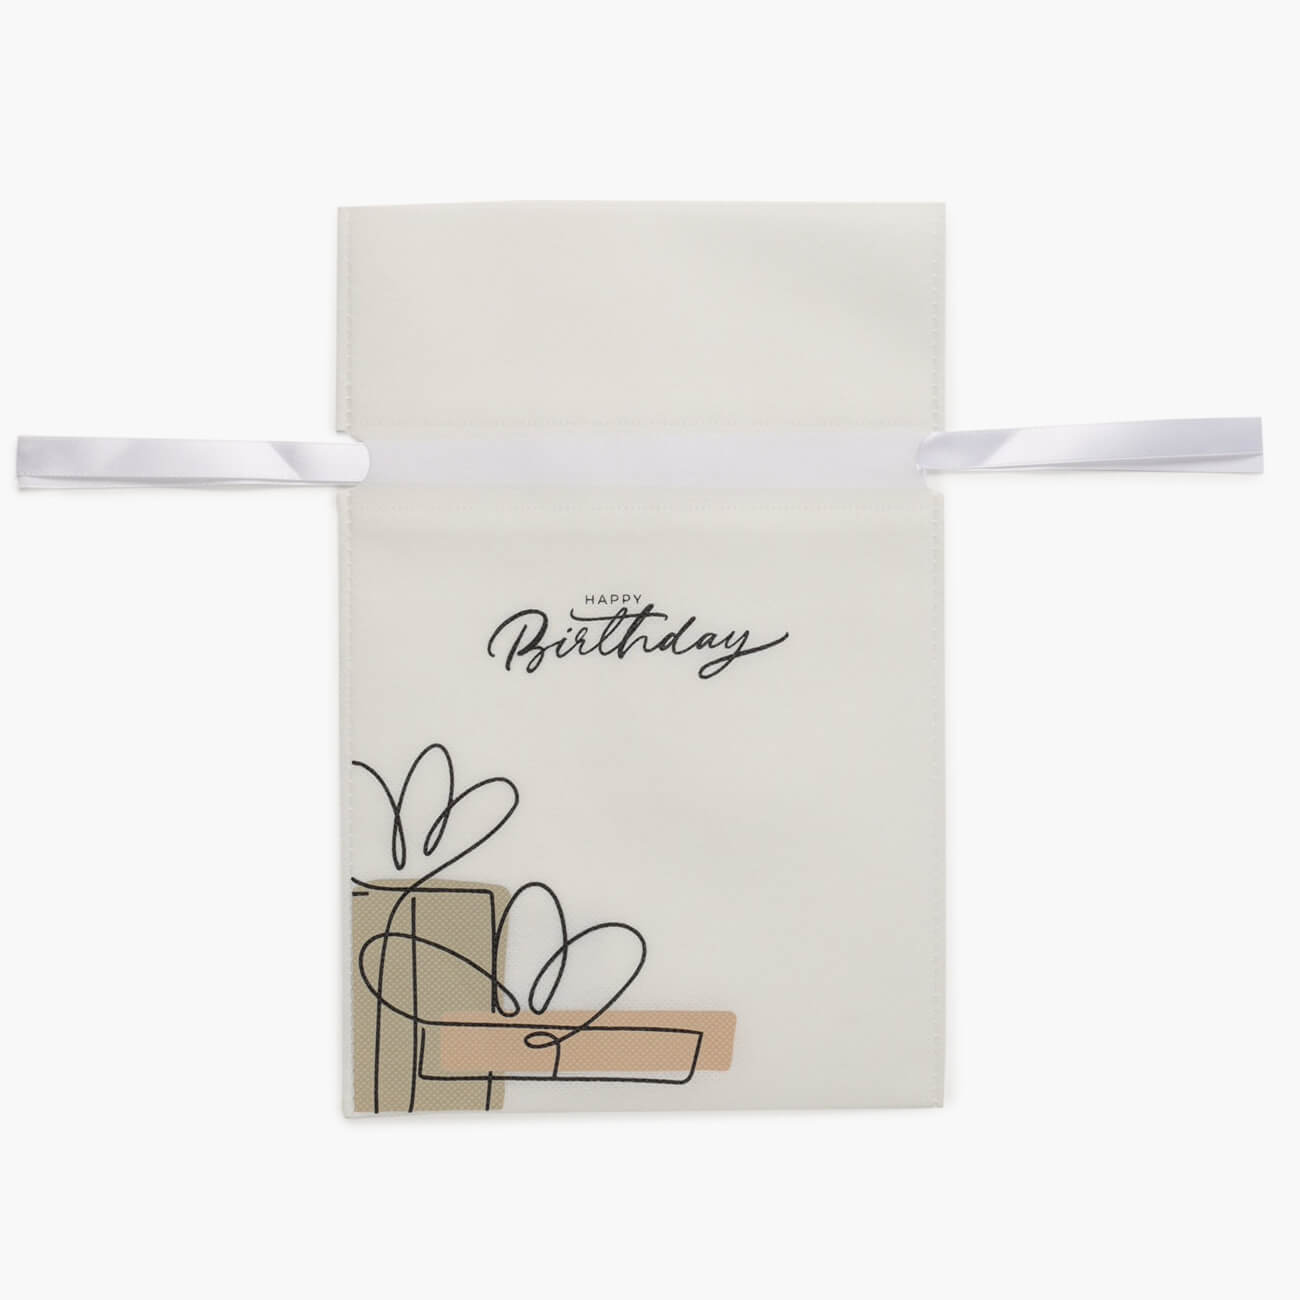 Мешок подарочный, 20х30 см, с завязками, полипропилен, белый, Happy Birthday, Birthday jbl filterbag wide мешок для грубых фильтрующих материалов